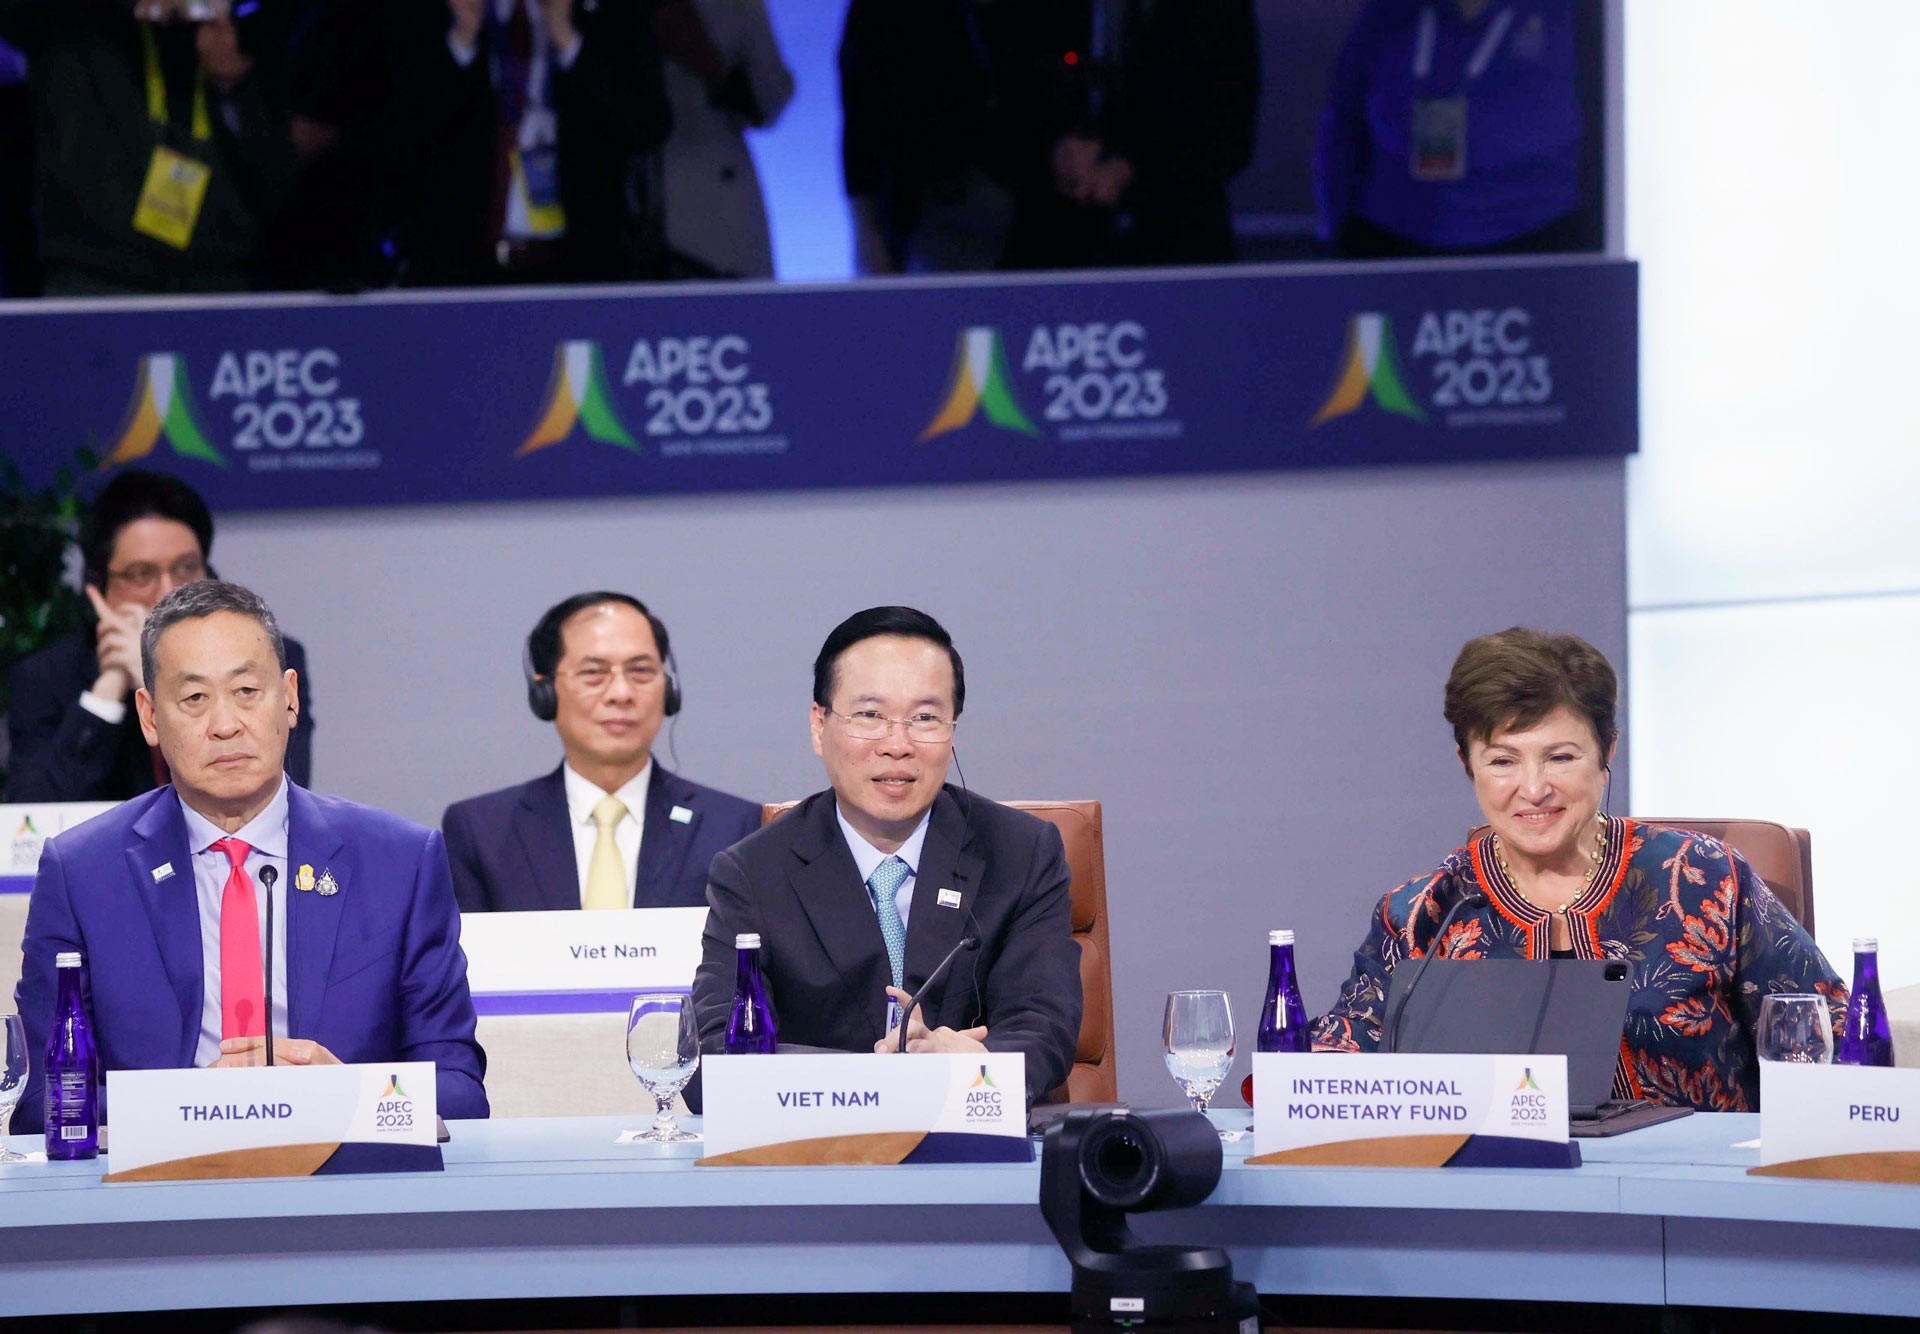 Chủ tịch nước Võ Văn Thưởng phát biểu tại Hội nghị các Nhà Lãnh đạo kinh tế của Diễn đàn hợp tác kinh tế châu Á - Thái Bình Dương (APEC) lần thứ 30.